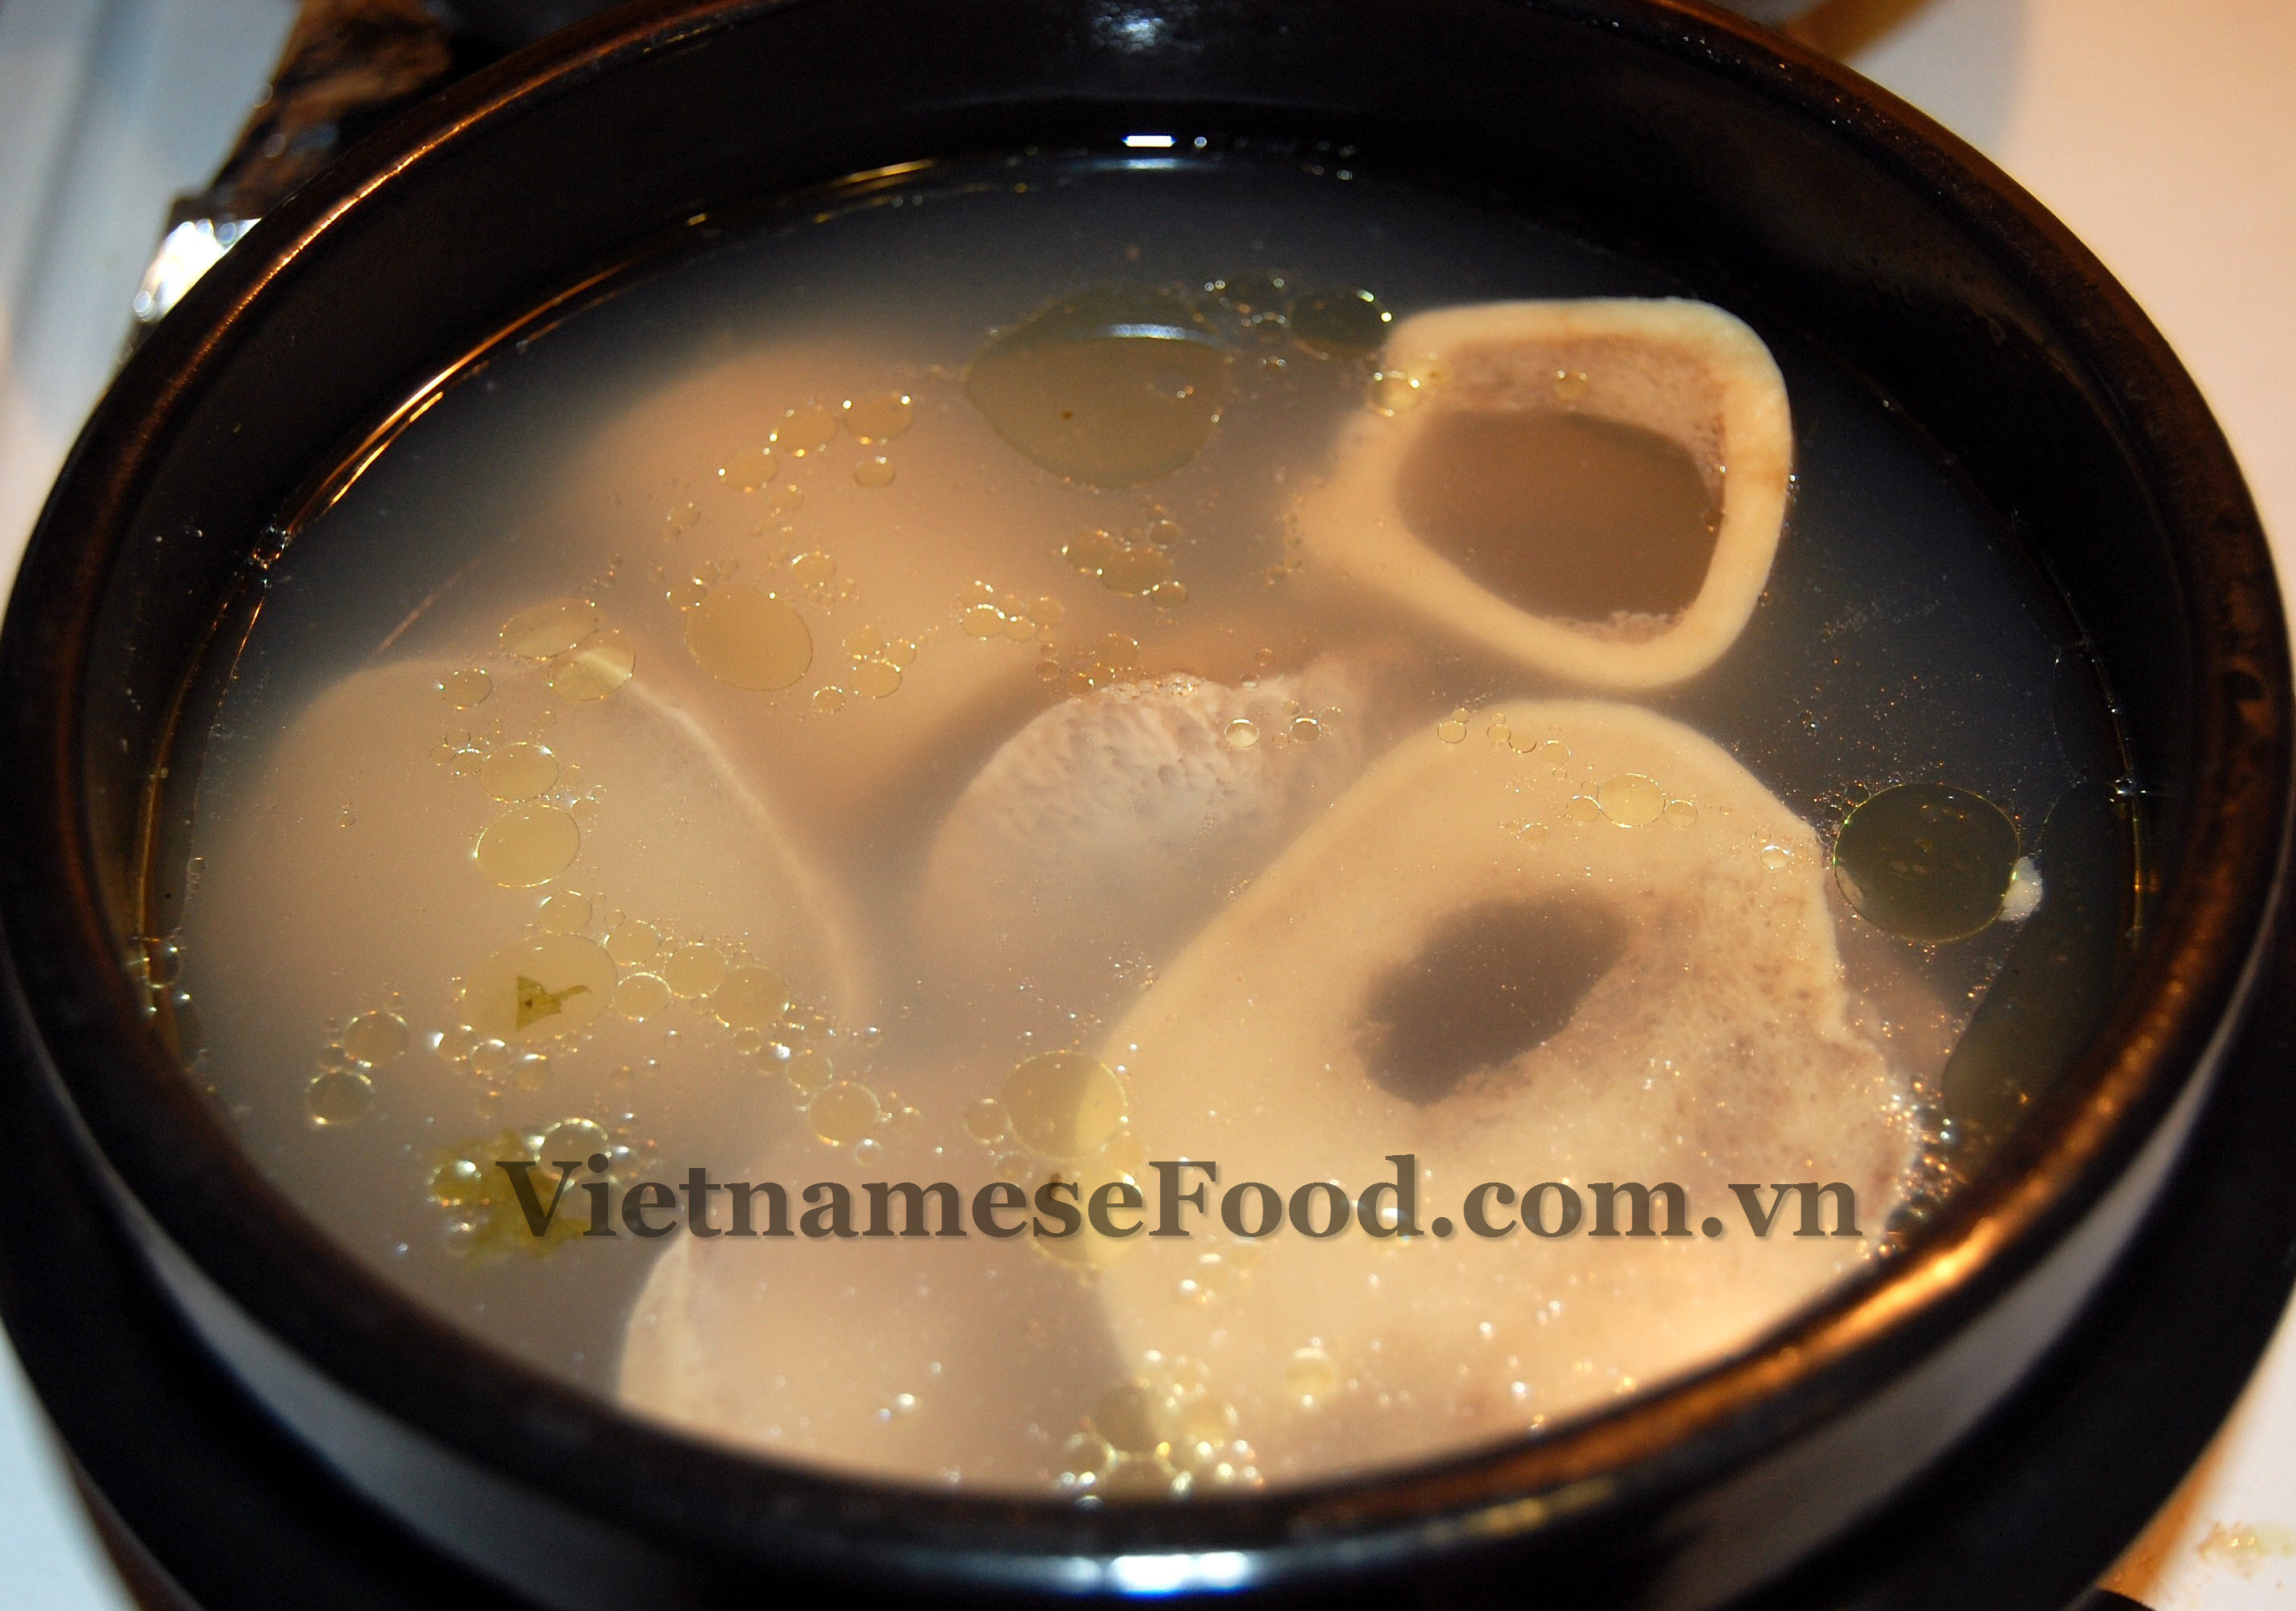 ezvietnamesecuisine.com/snail-vermicelli-soup-recipe-bun-oc